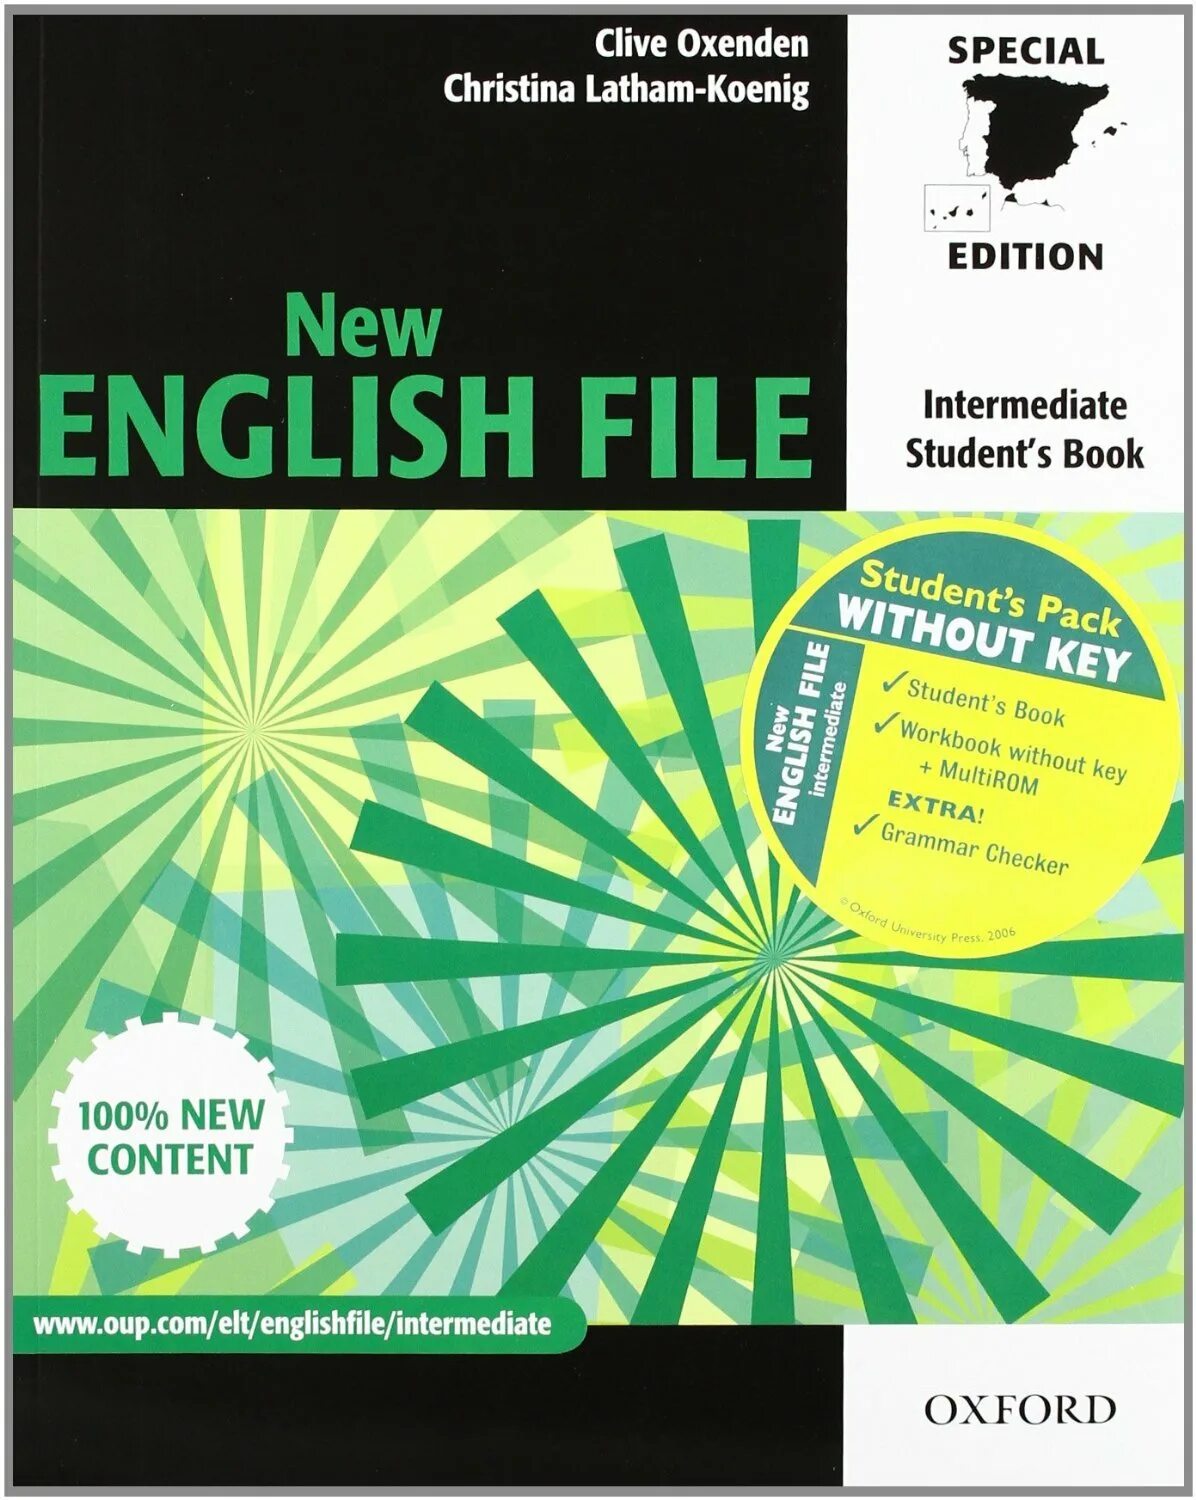 English file inter. New English file Intermediate диски. New English file 100% New Oxford Upper-Intermediate. English file 4th Edition уровни. New English file Intermediate. Student's book. Clive Oxenden, Christina Latham-Koenig [Oxford] (+Audio) (2006).